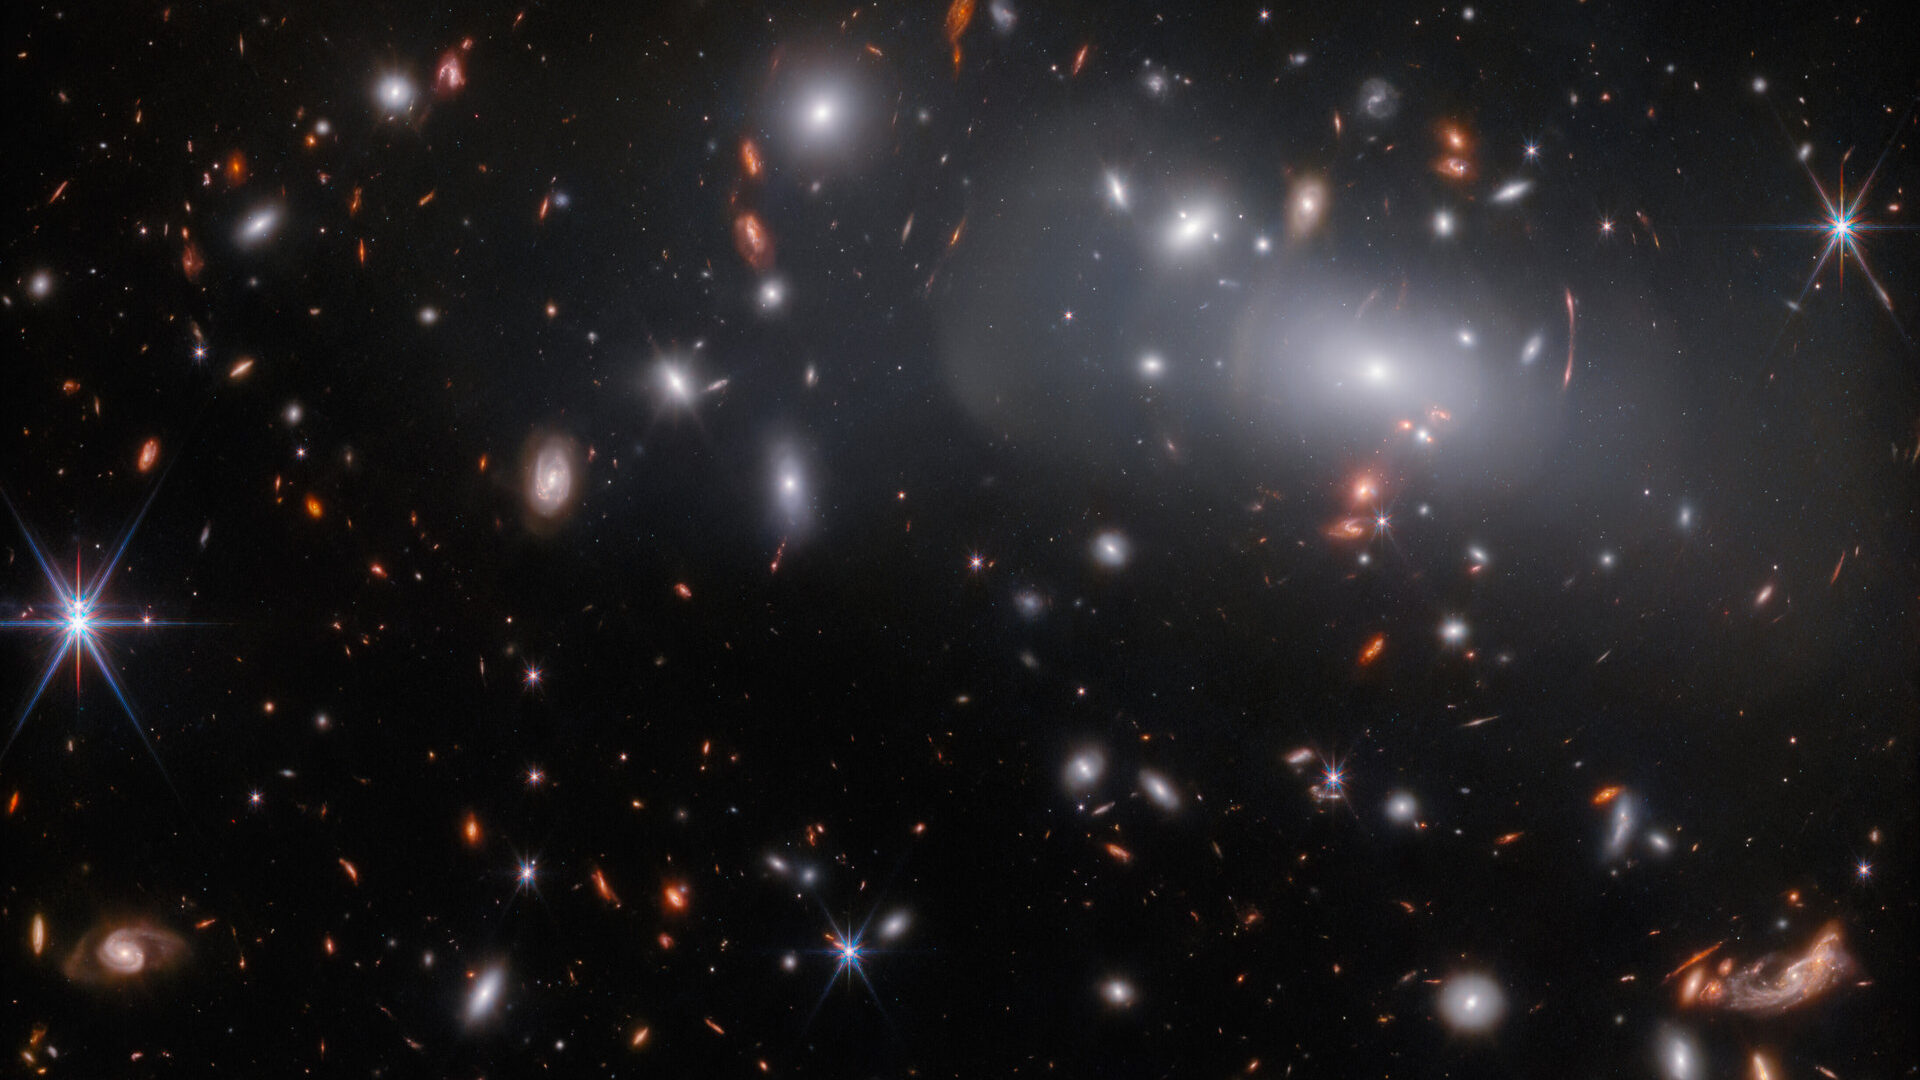 Une grande galaxie elliptique entourée de nombreuses galaxies plus petites et similaires, comme le montre le télescope spatial James Webb.